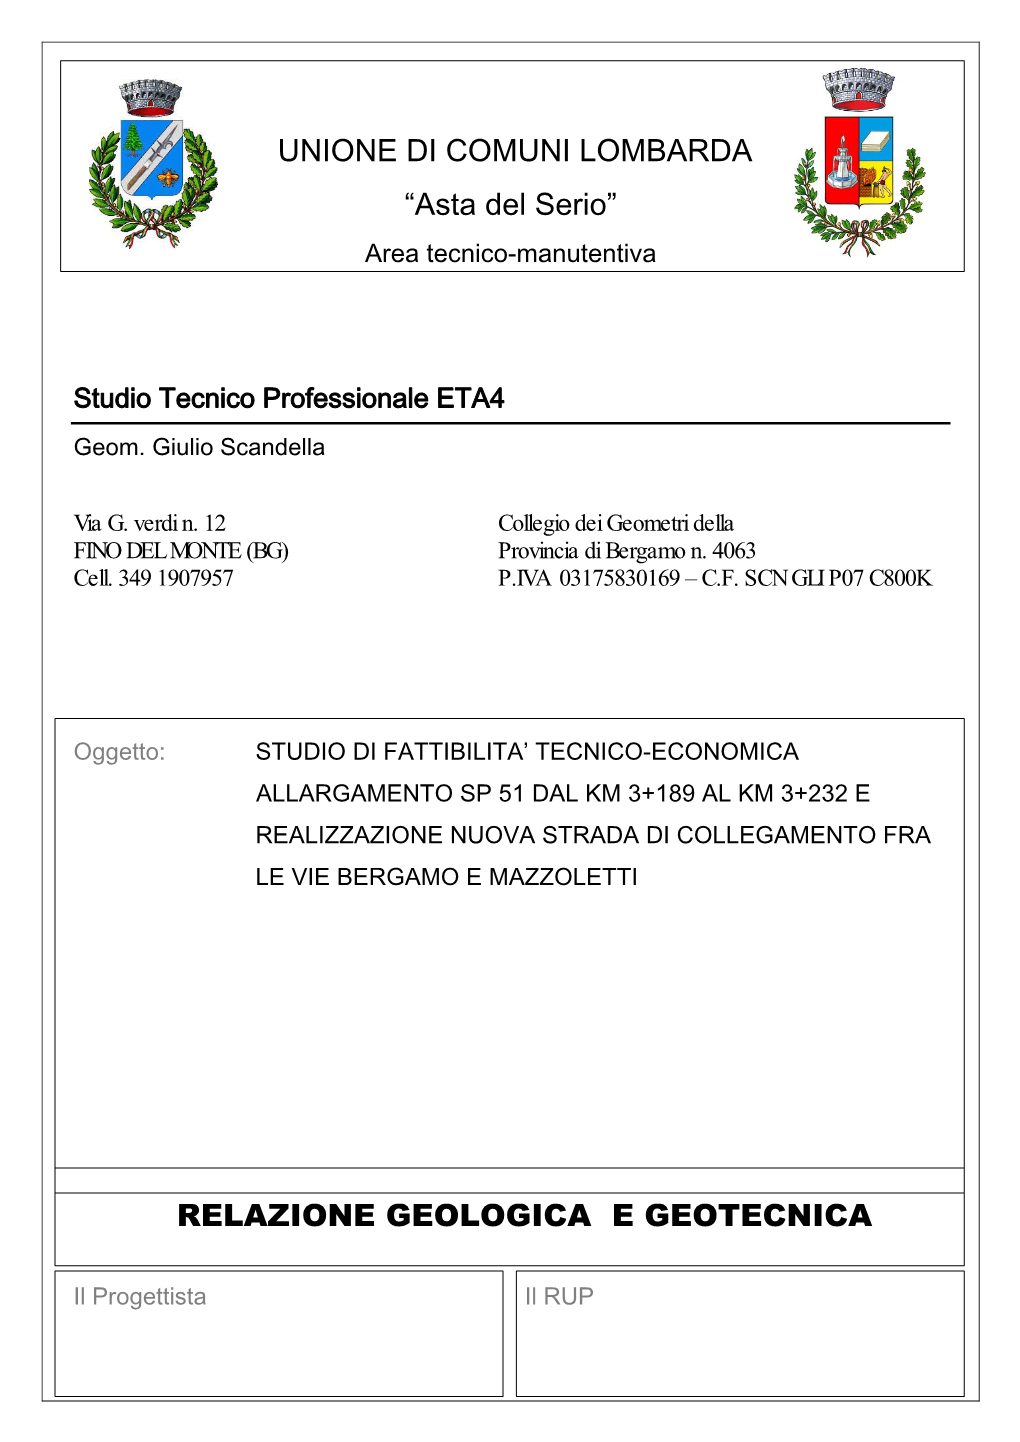 Relazione Geologica E Geotecnica